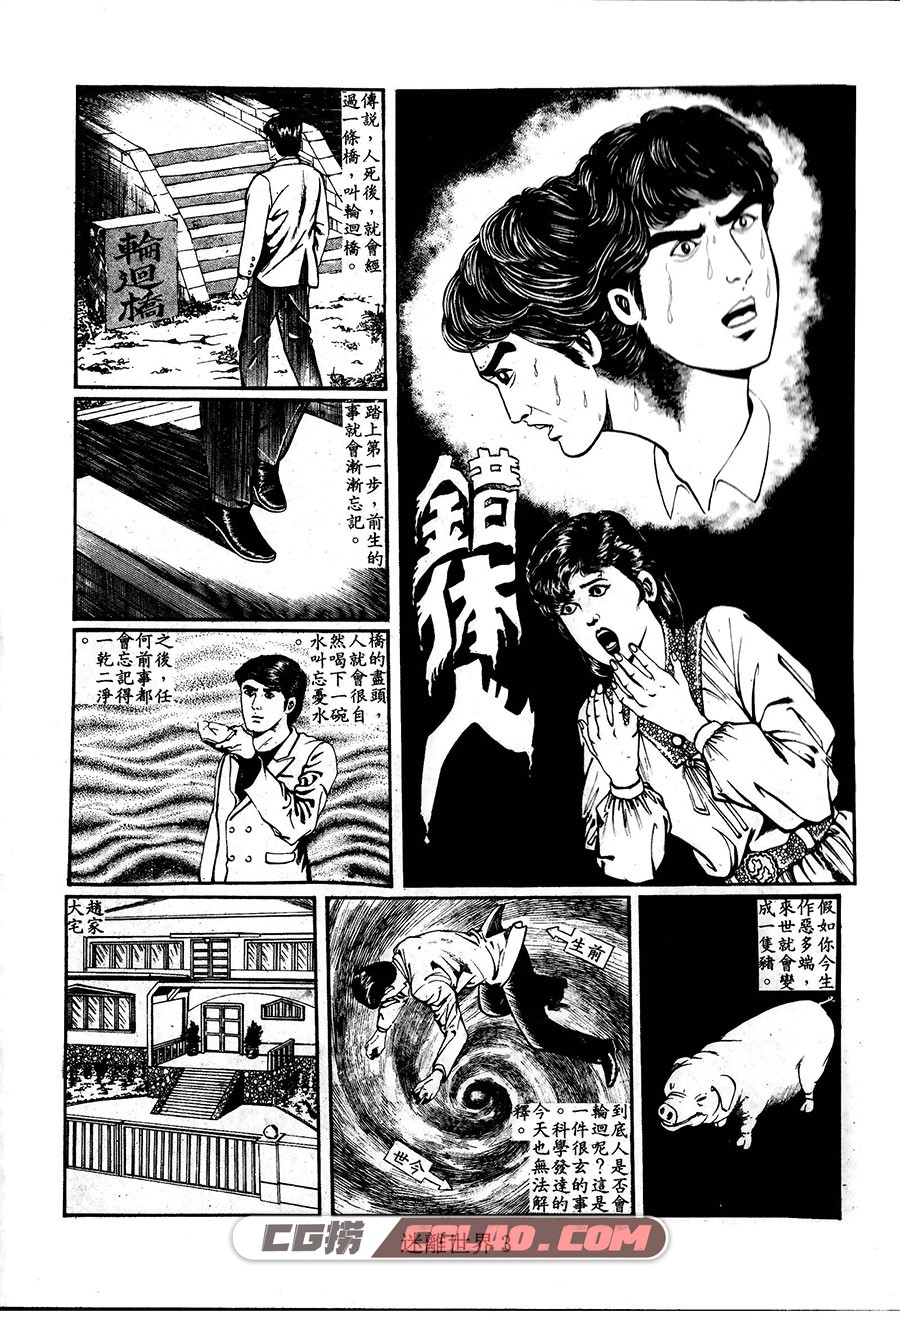 迷离世界 上官小威 1-2册 全集漫画下载 百度网盘,03.jpg